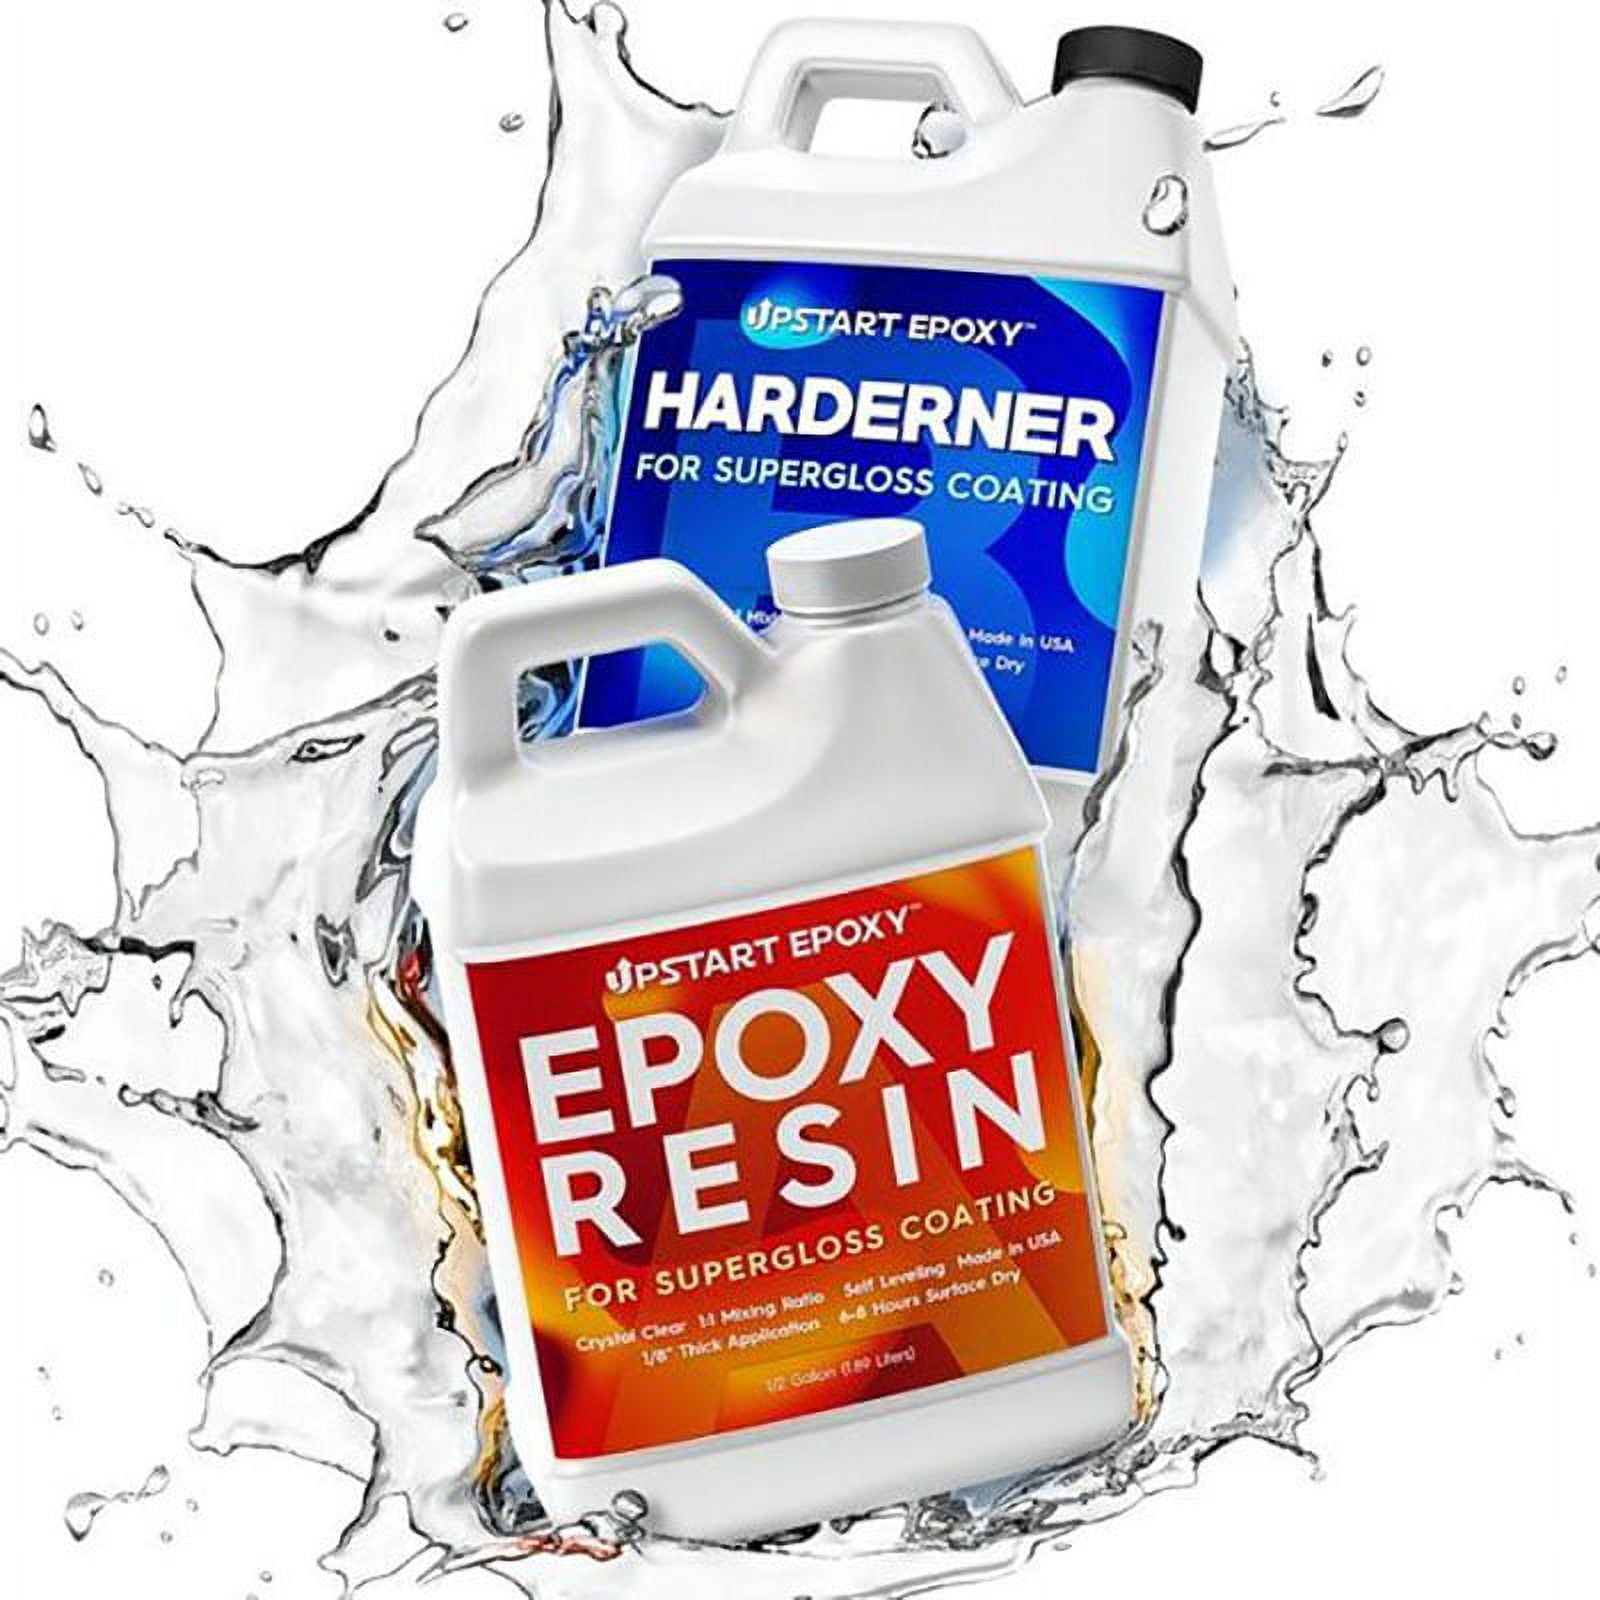 Upstart Epoxy Resin Hardener Duel Bottles Super Gloss Coating 1 Gallon Kit